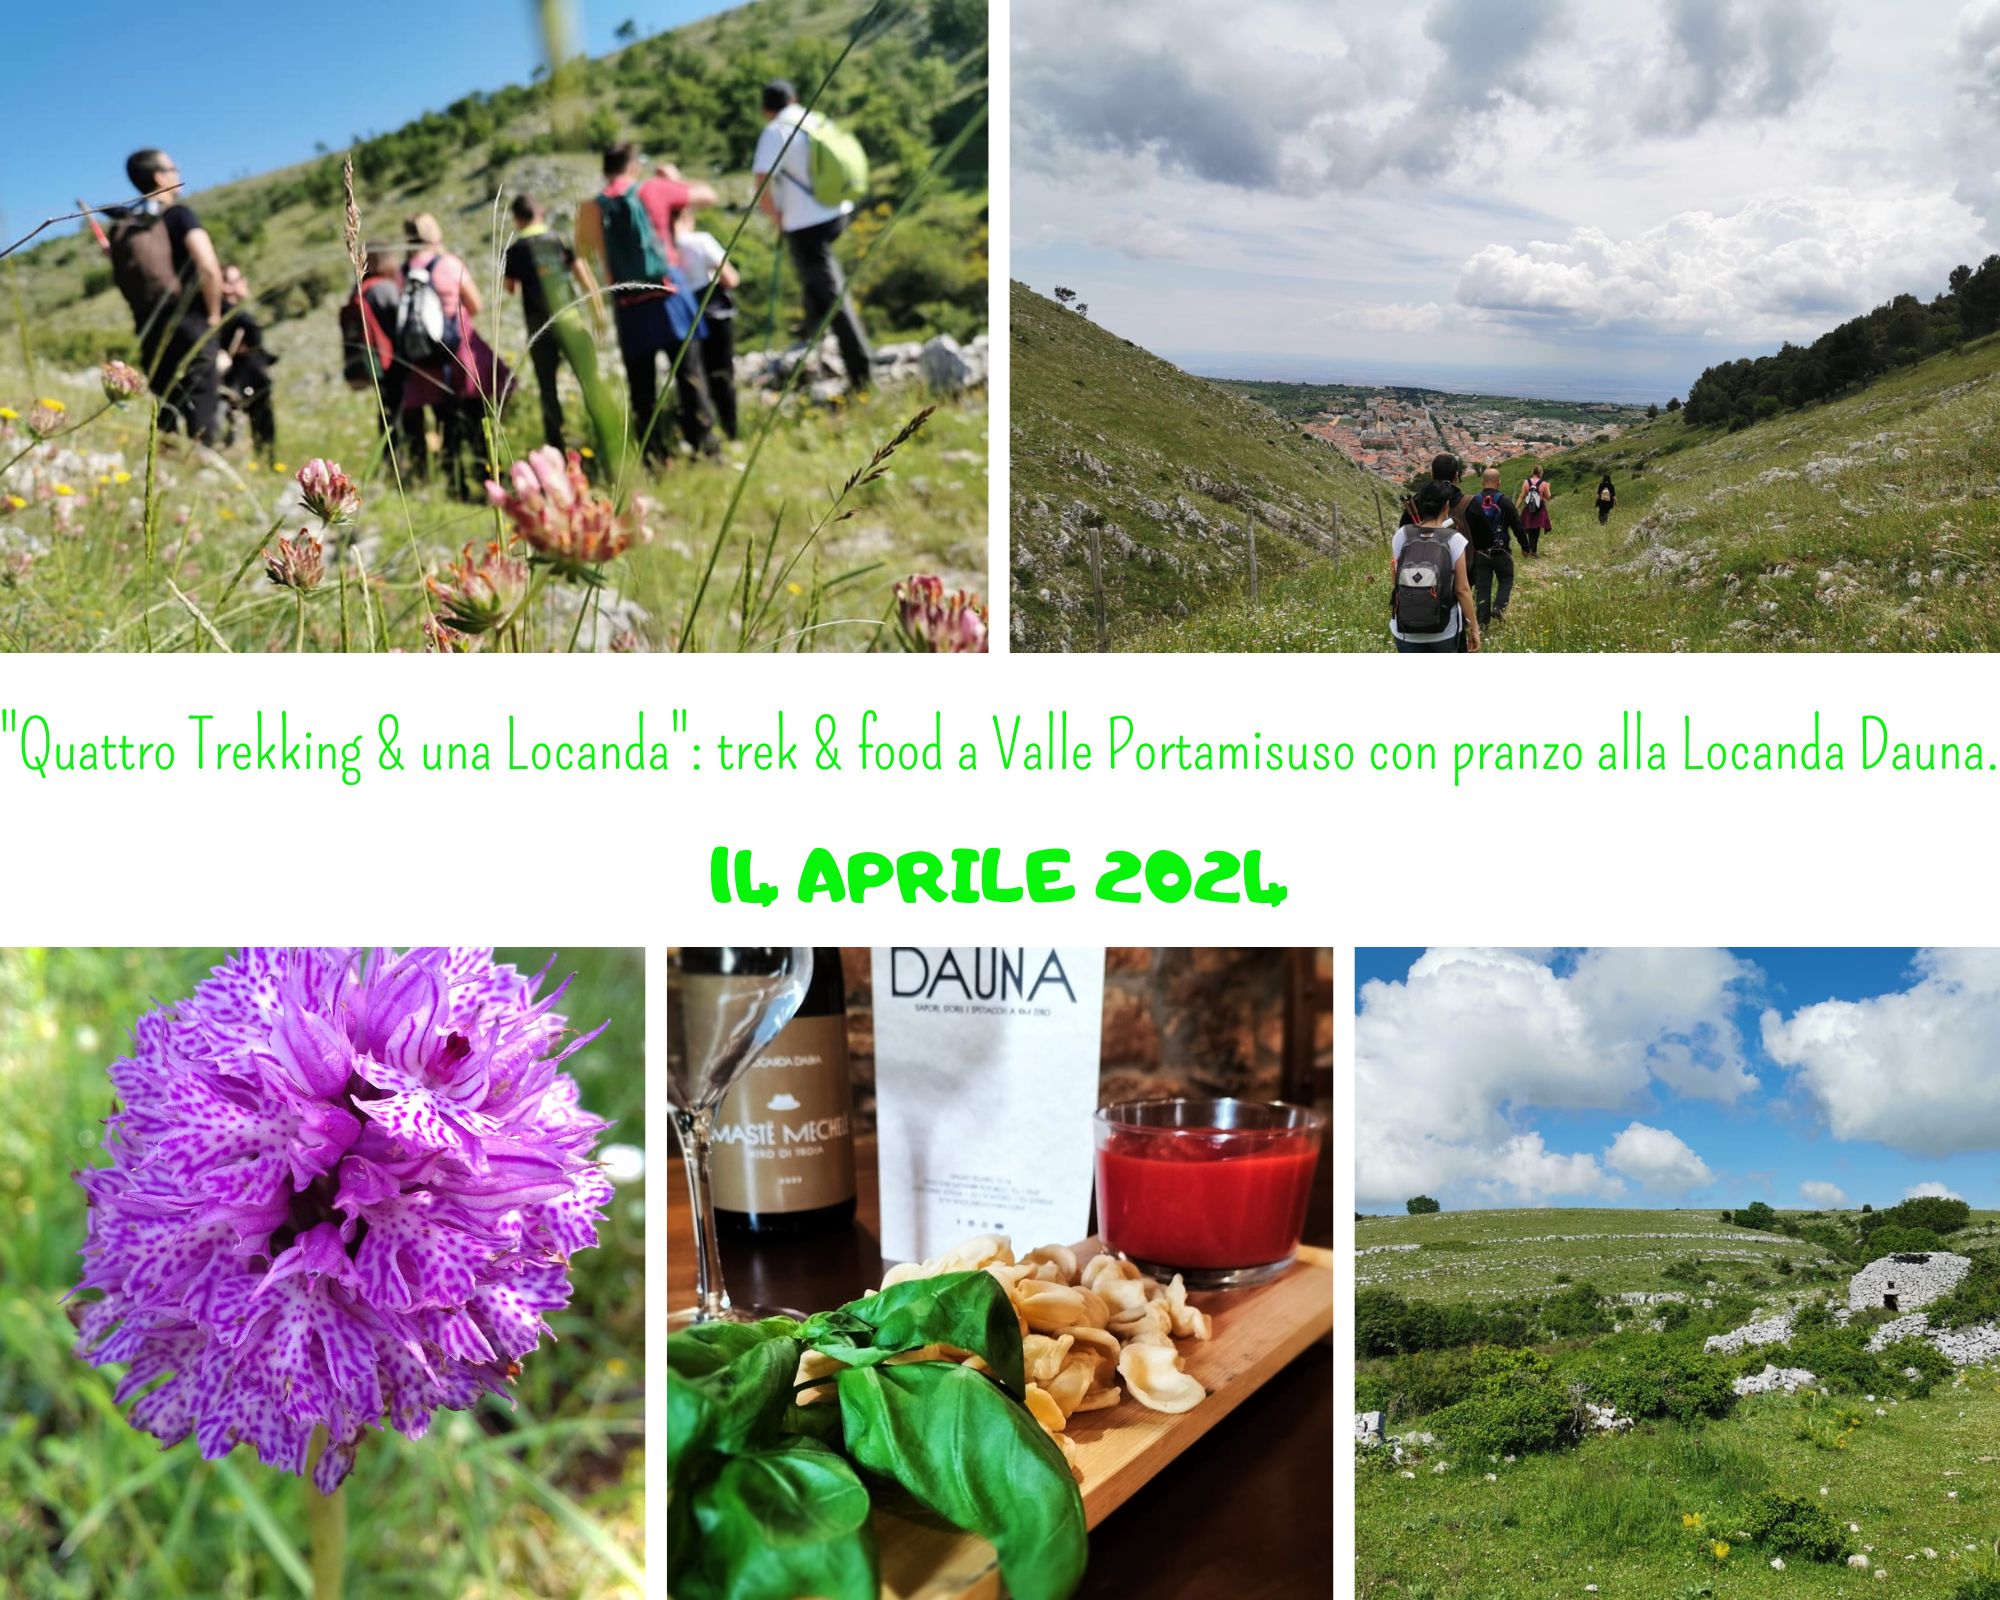 Terzo trekking stagionale (primaverile) della serie “Quattro Trekking & una Locanda”: trek & food a Valle Portamisuso con pranzo alla Locanda Dauna.